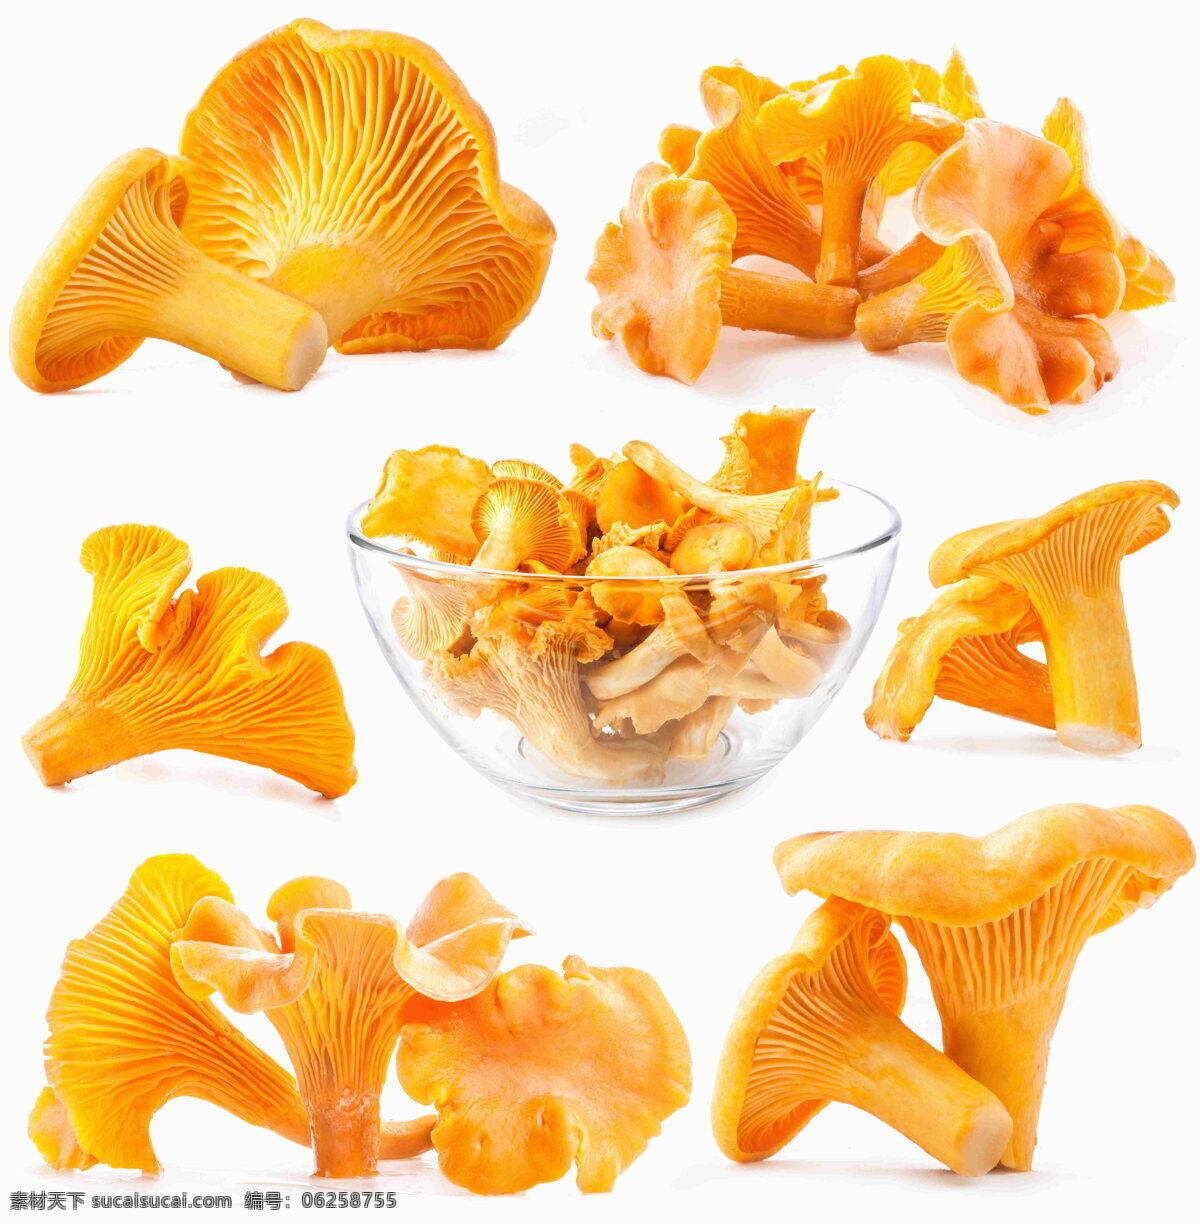 黄色蘑菇 黄色 蘑菇 食材 食物 干货 食用蘑菇 真菌 菌类 食用真菌 黄色美食 食物原料 餐饮美食